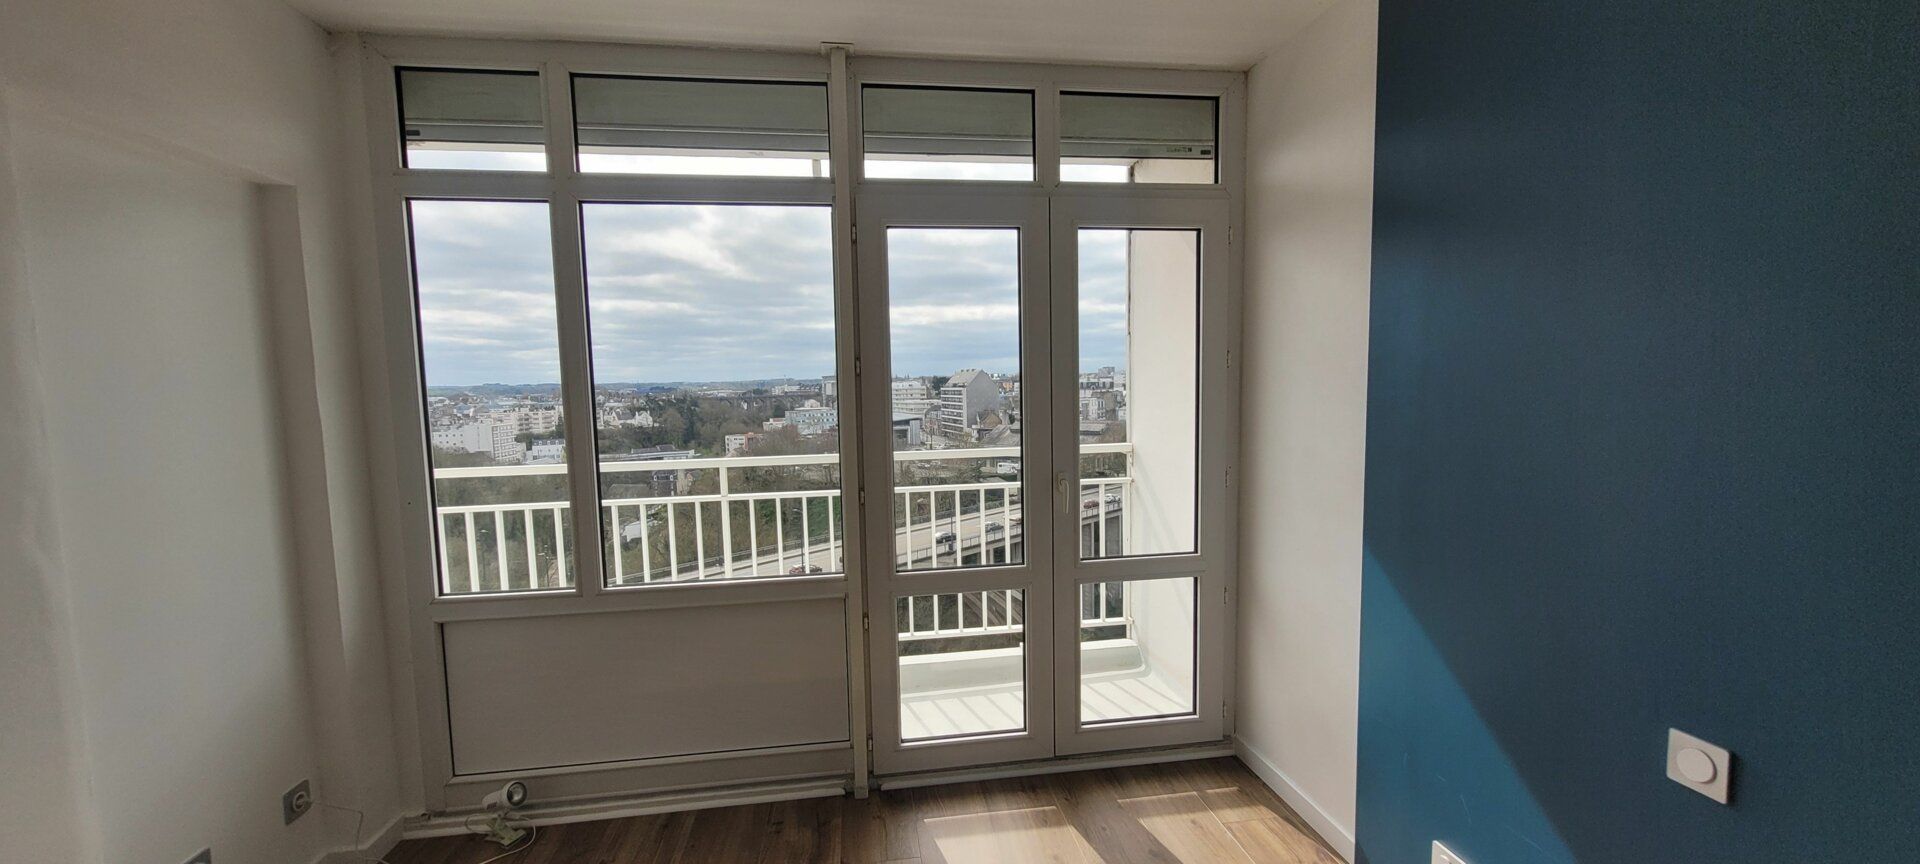 Appartement à vendre 3 72.15m2 à Saint-Brieuc vignette-15